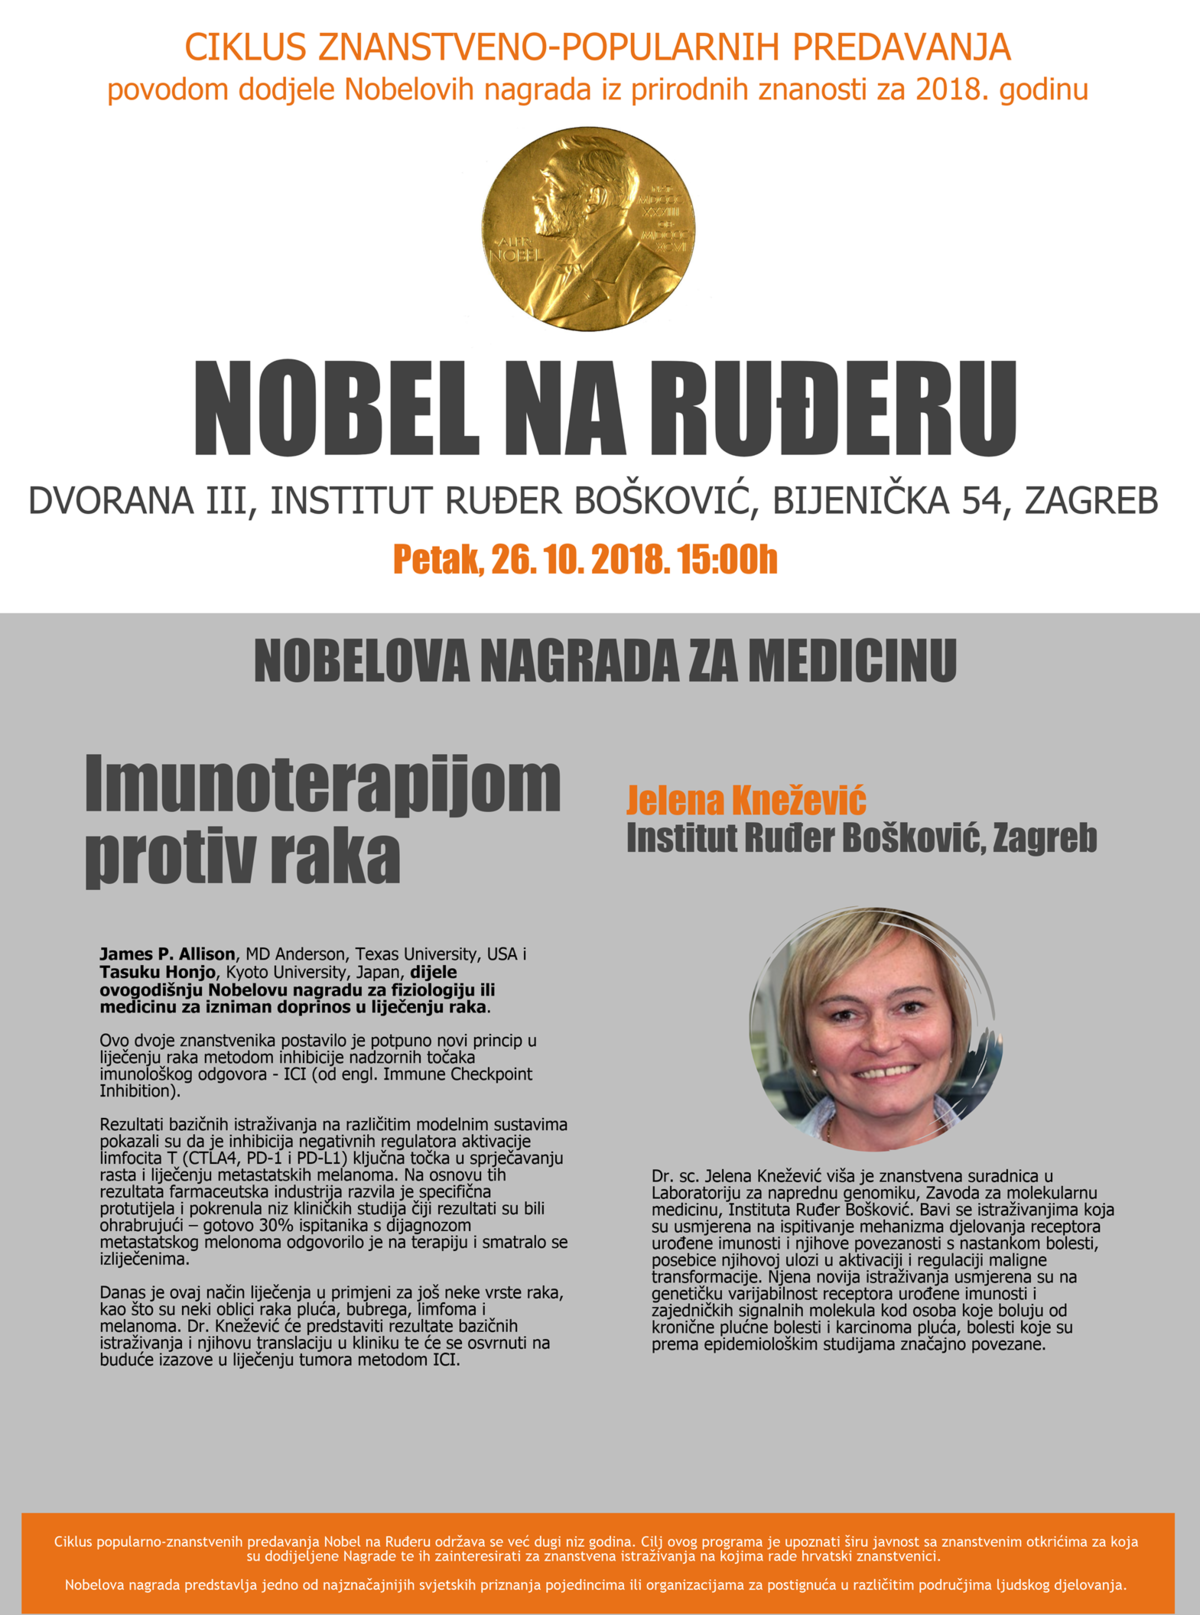 2018-nobel-na-irb-u-medicina